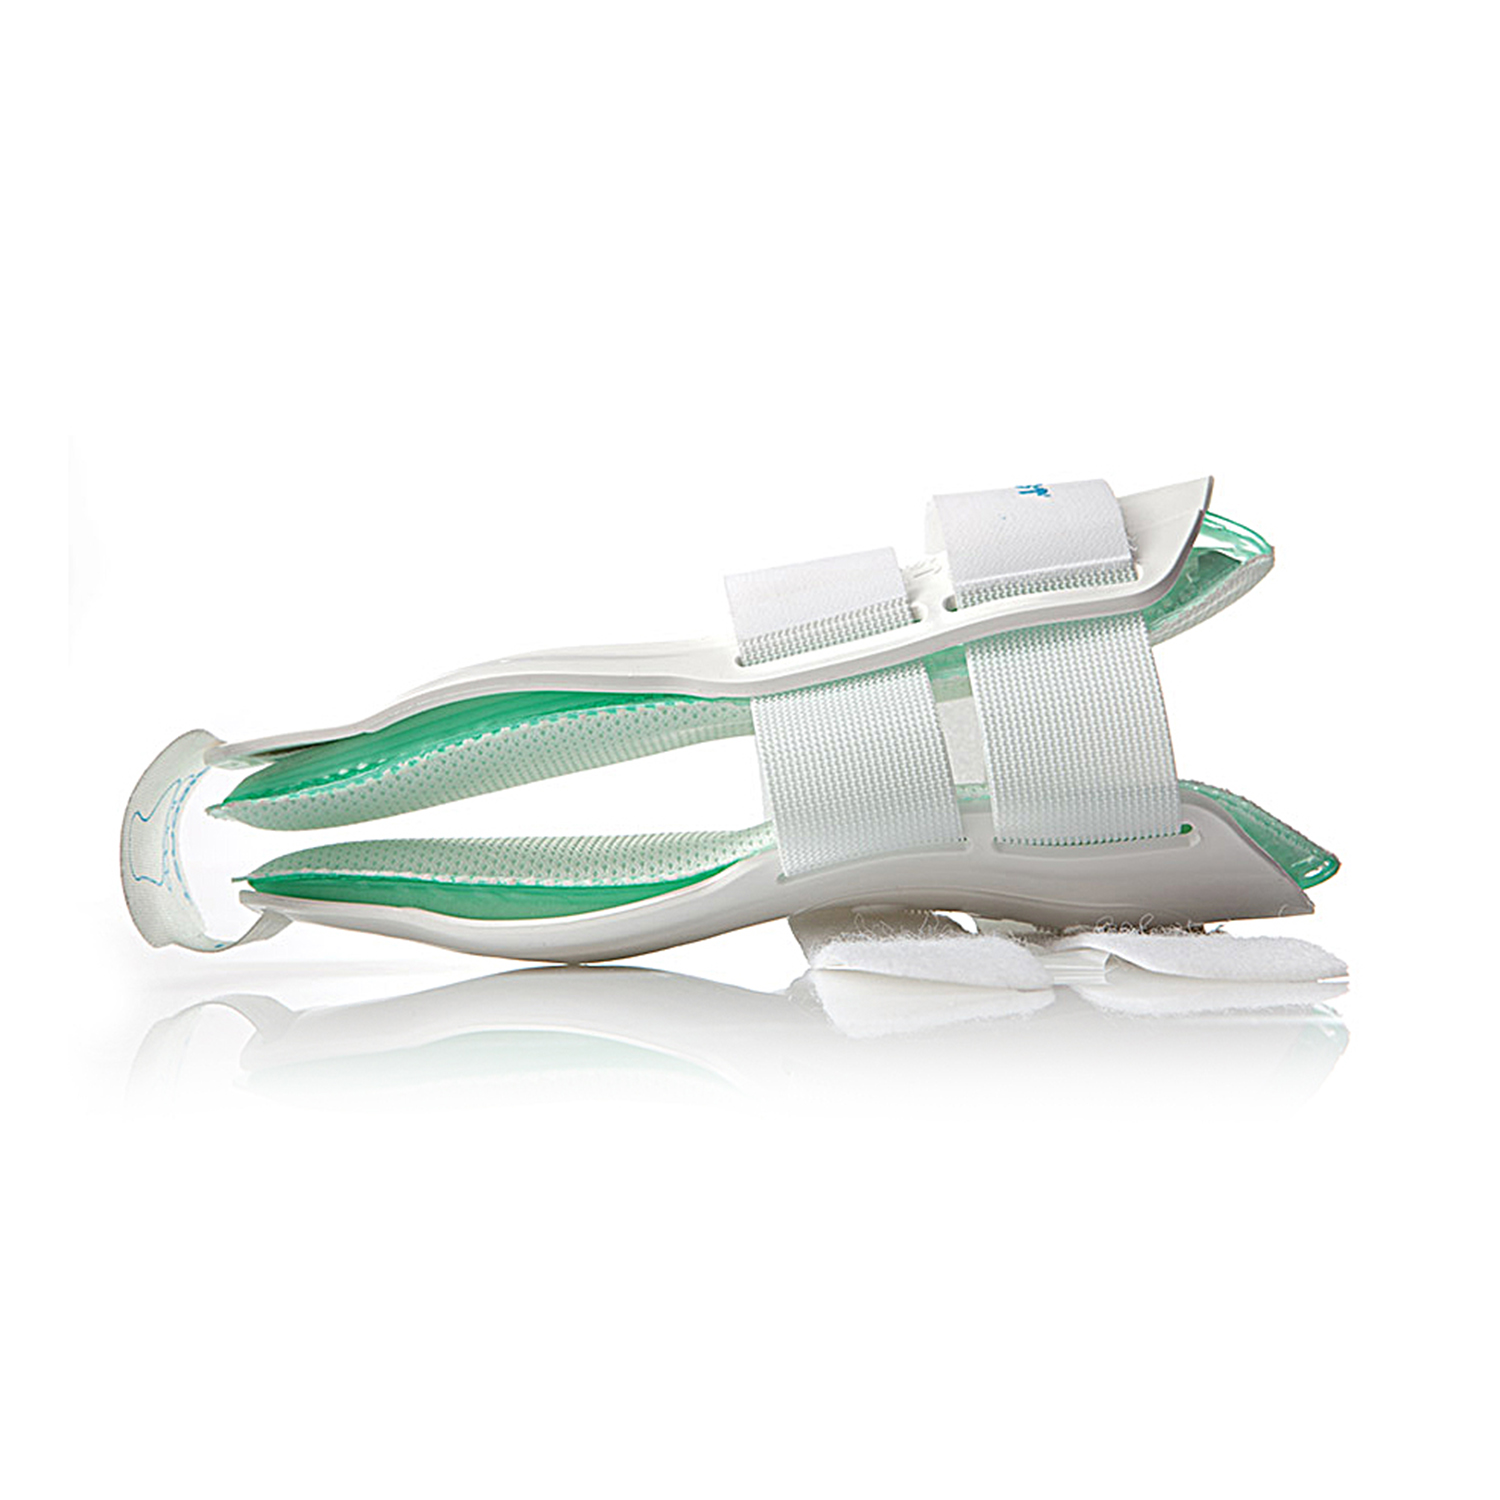 Zusatzbild AIRCAST® Air-Stirrup II™, liegend, Orthese zur Stabilisierung des Sprunggelenks mit Begrenzung von Pro- und Supination